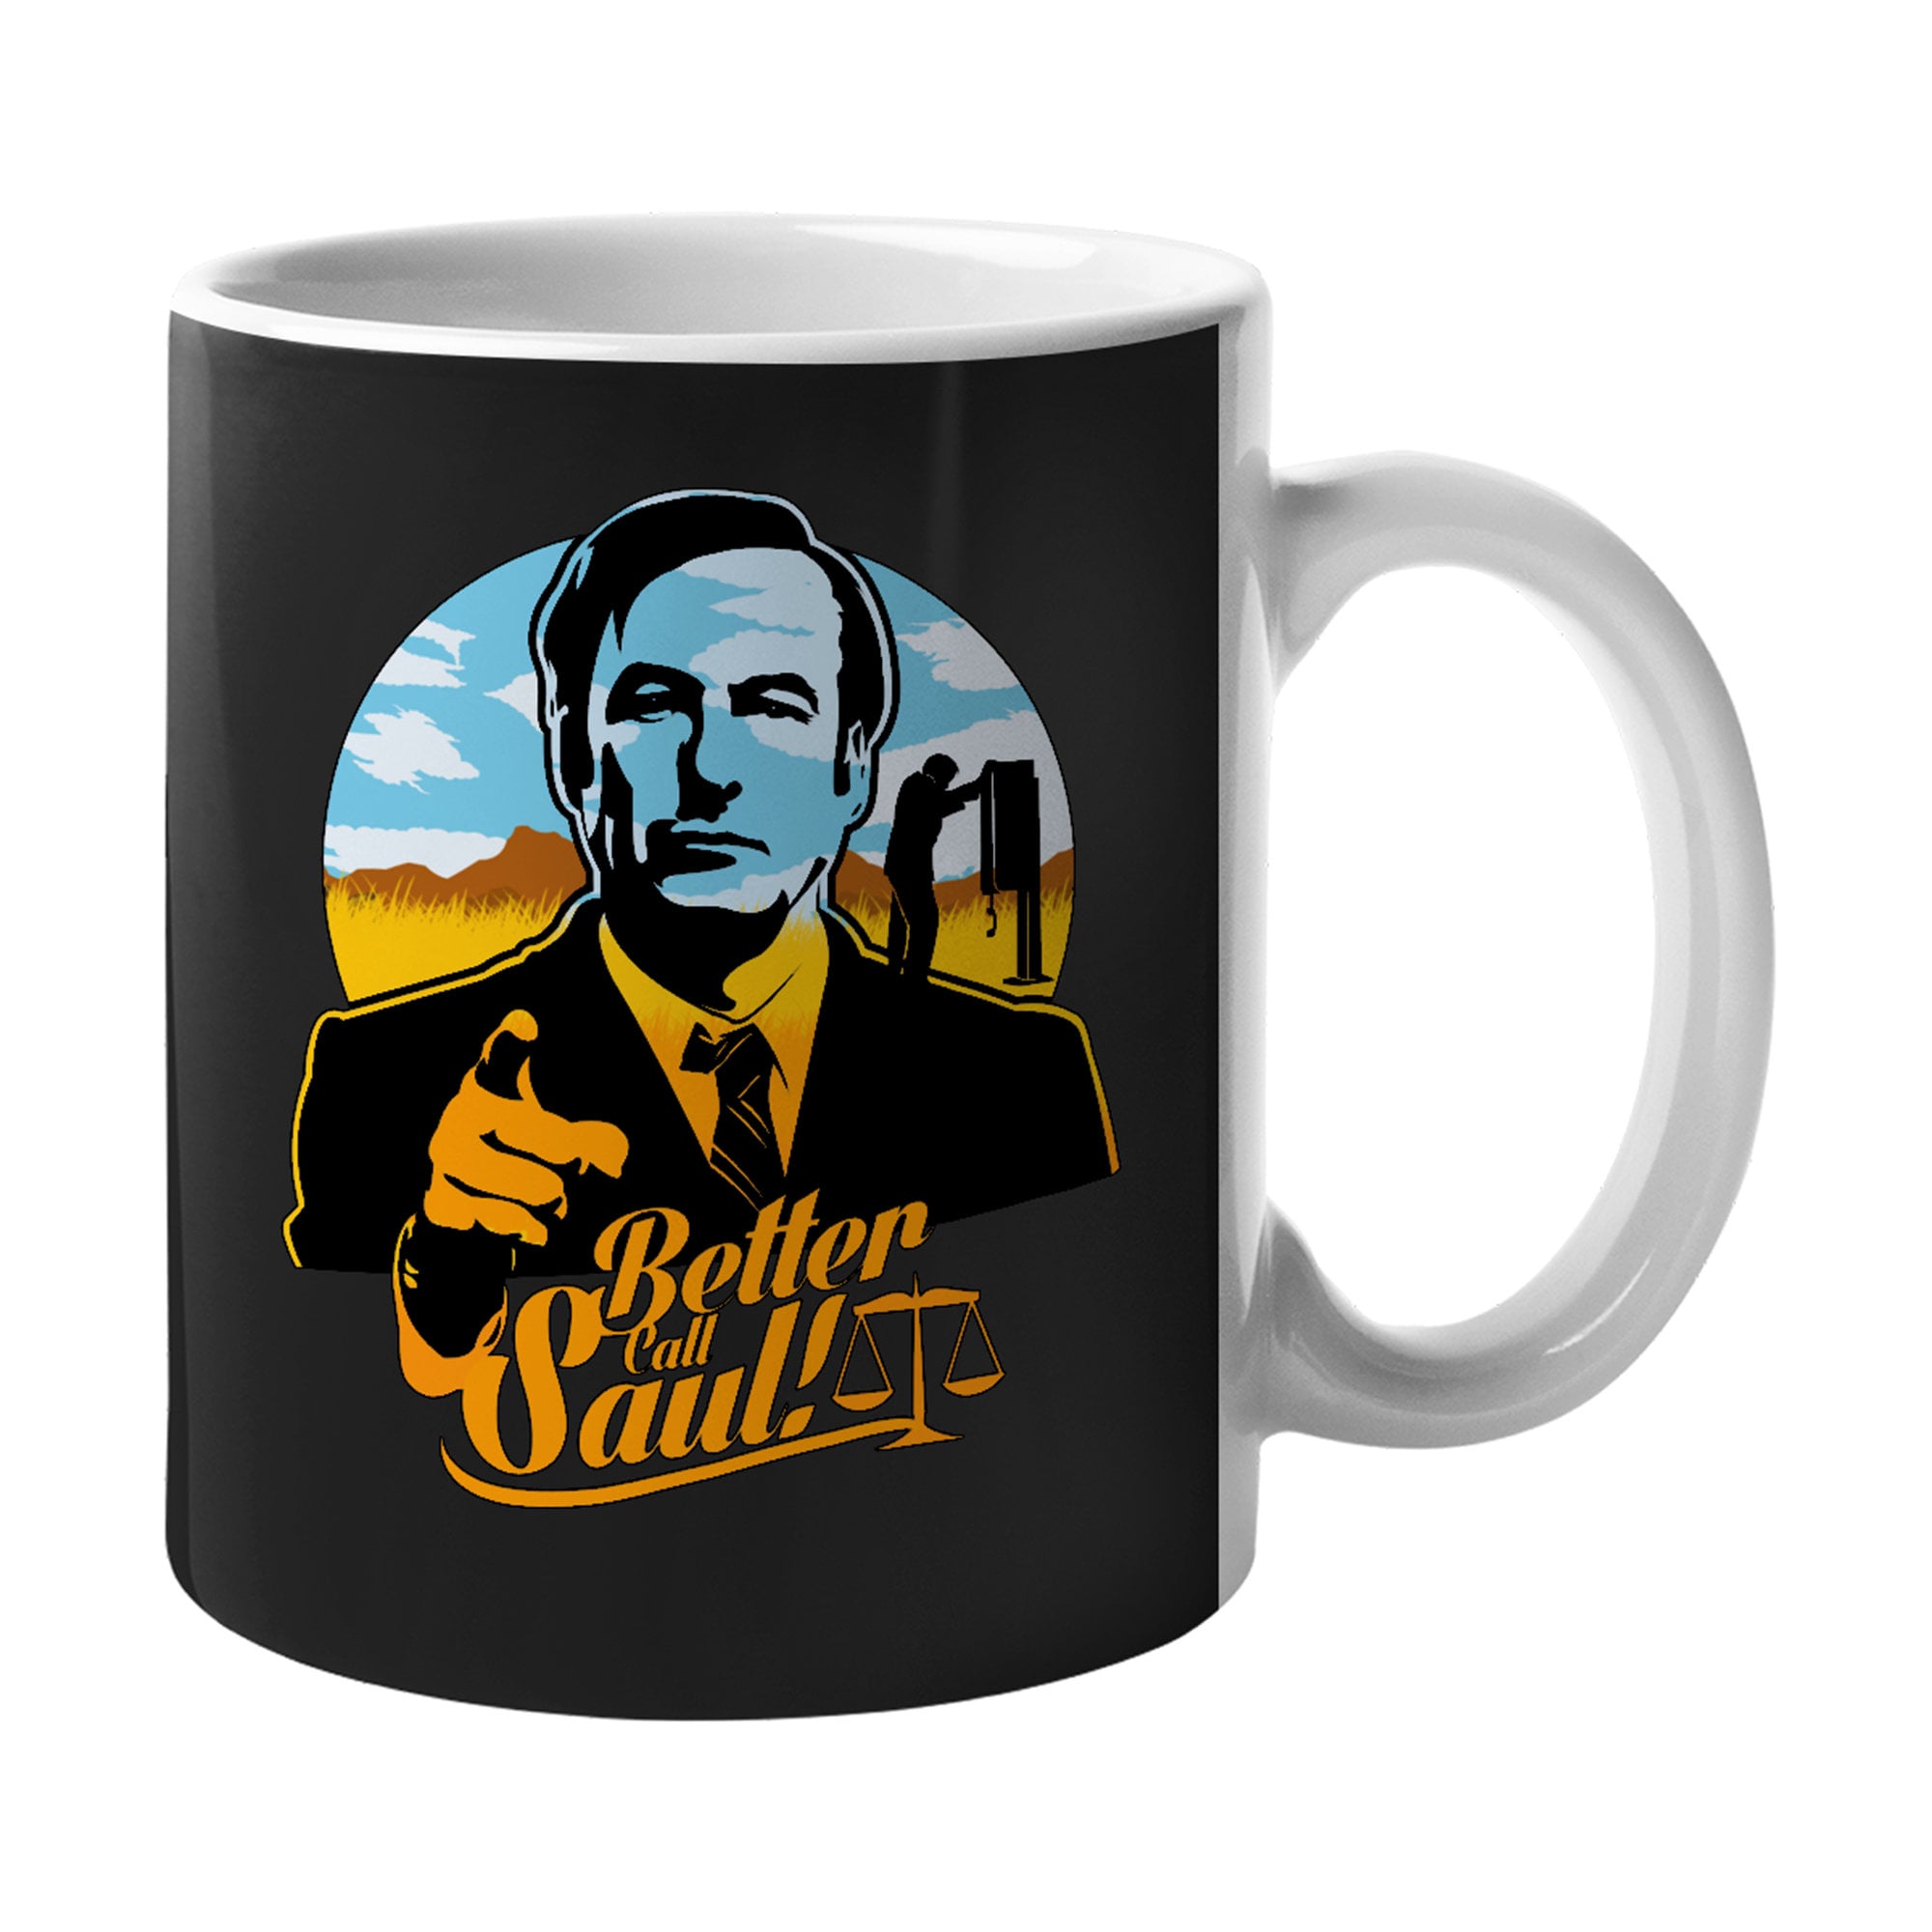 Discover Better Call Saul Retro Mug Funny Coffee Mug - Deny Everything Cup